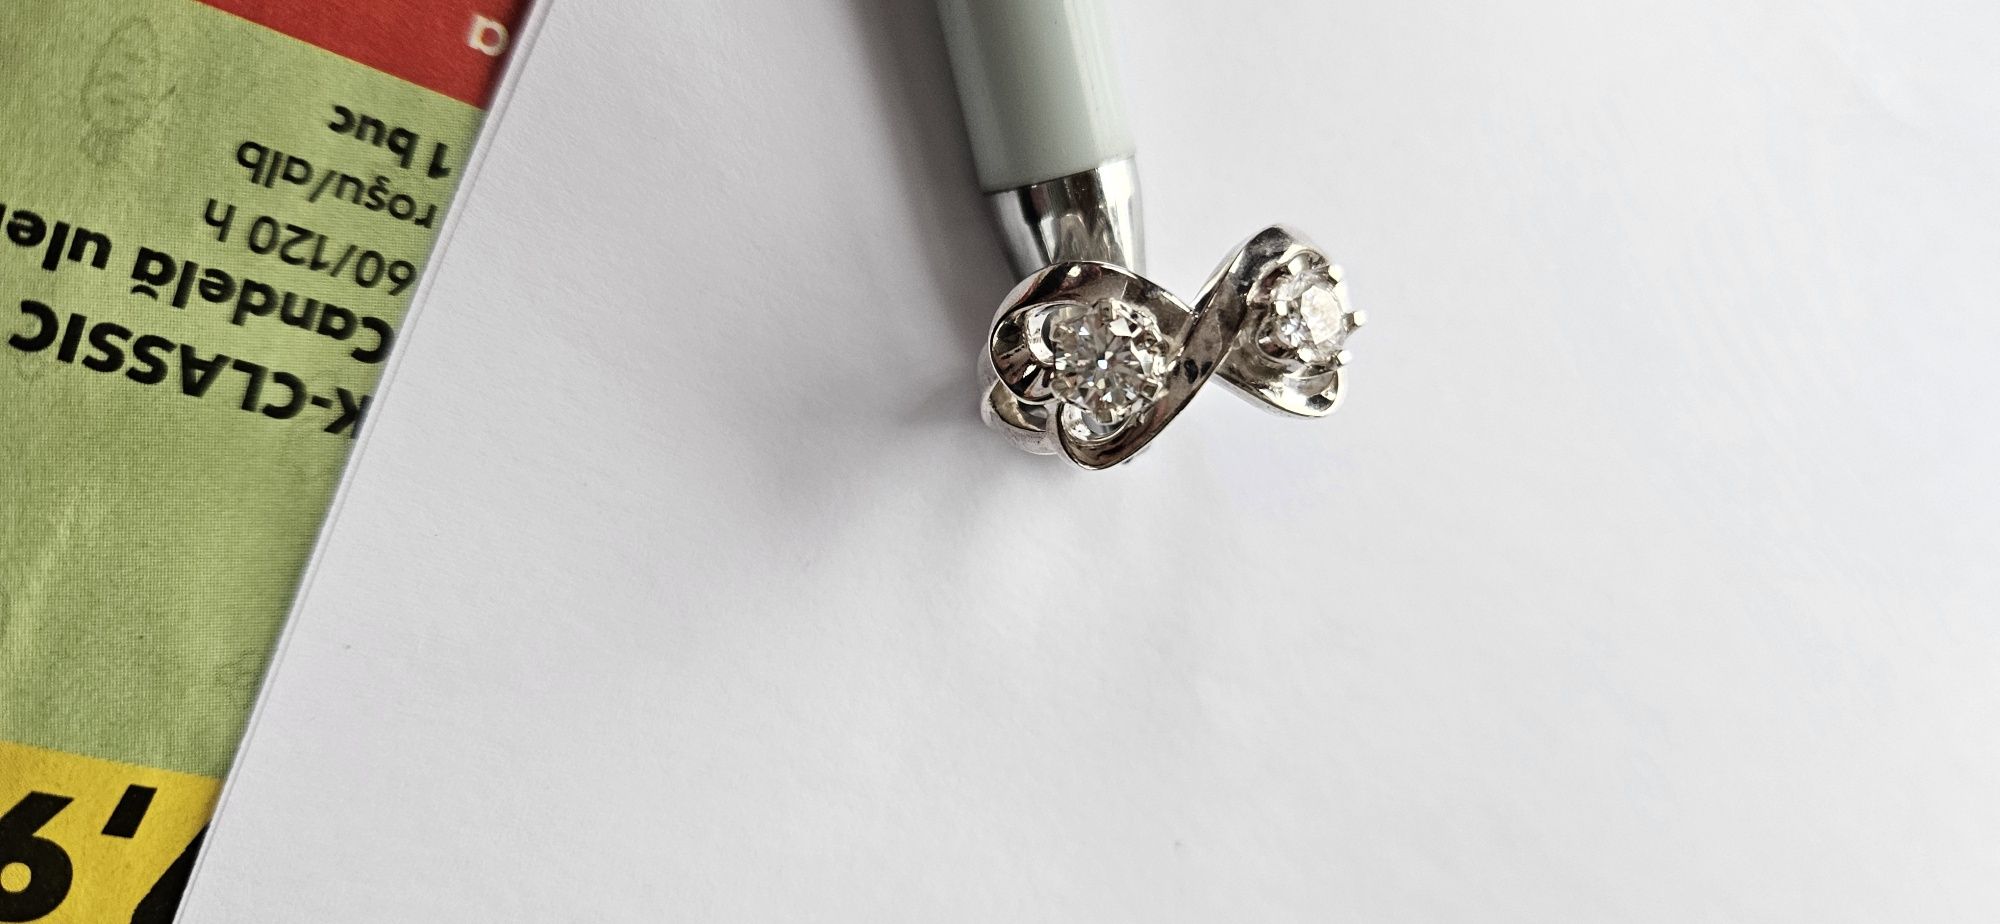 Inel Tiffany diamante 1 carat model vintage artdeco ideal cadou